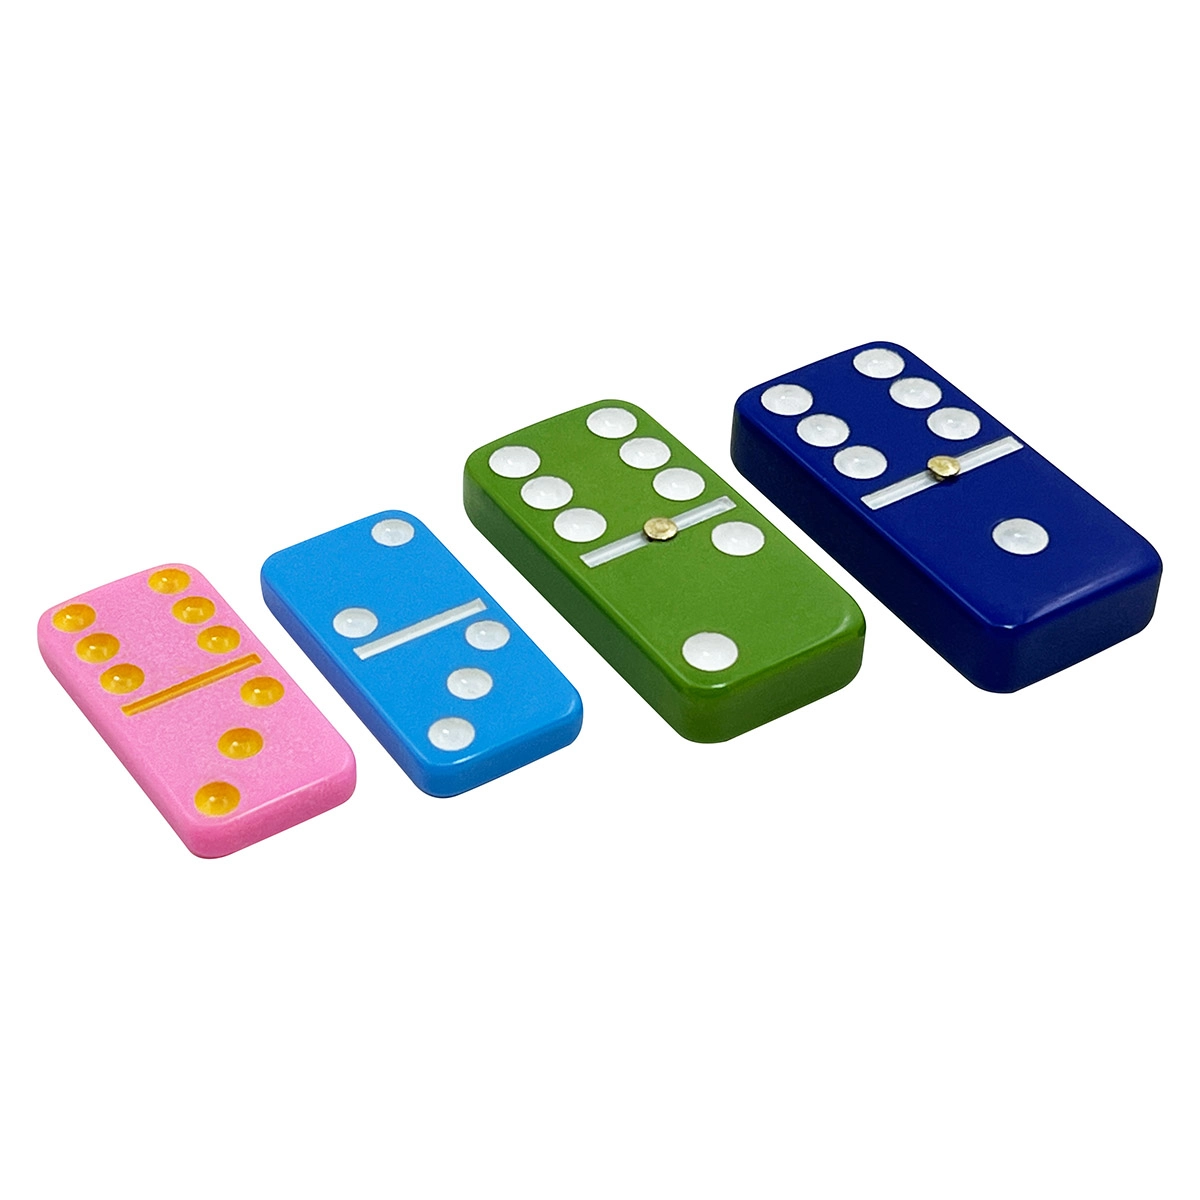 Benutzerdefinierte farbige Domino-Fliesen